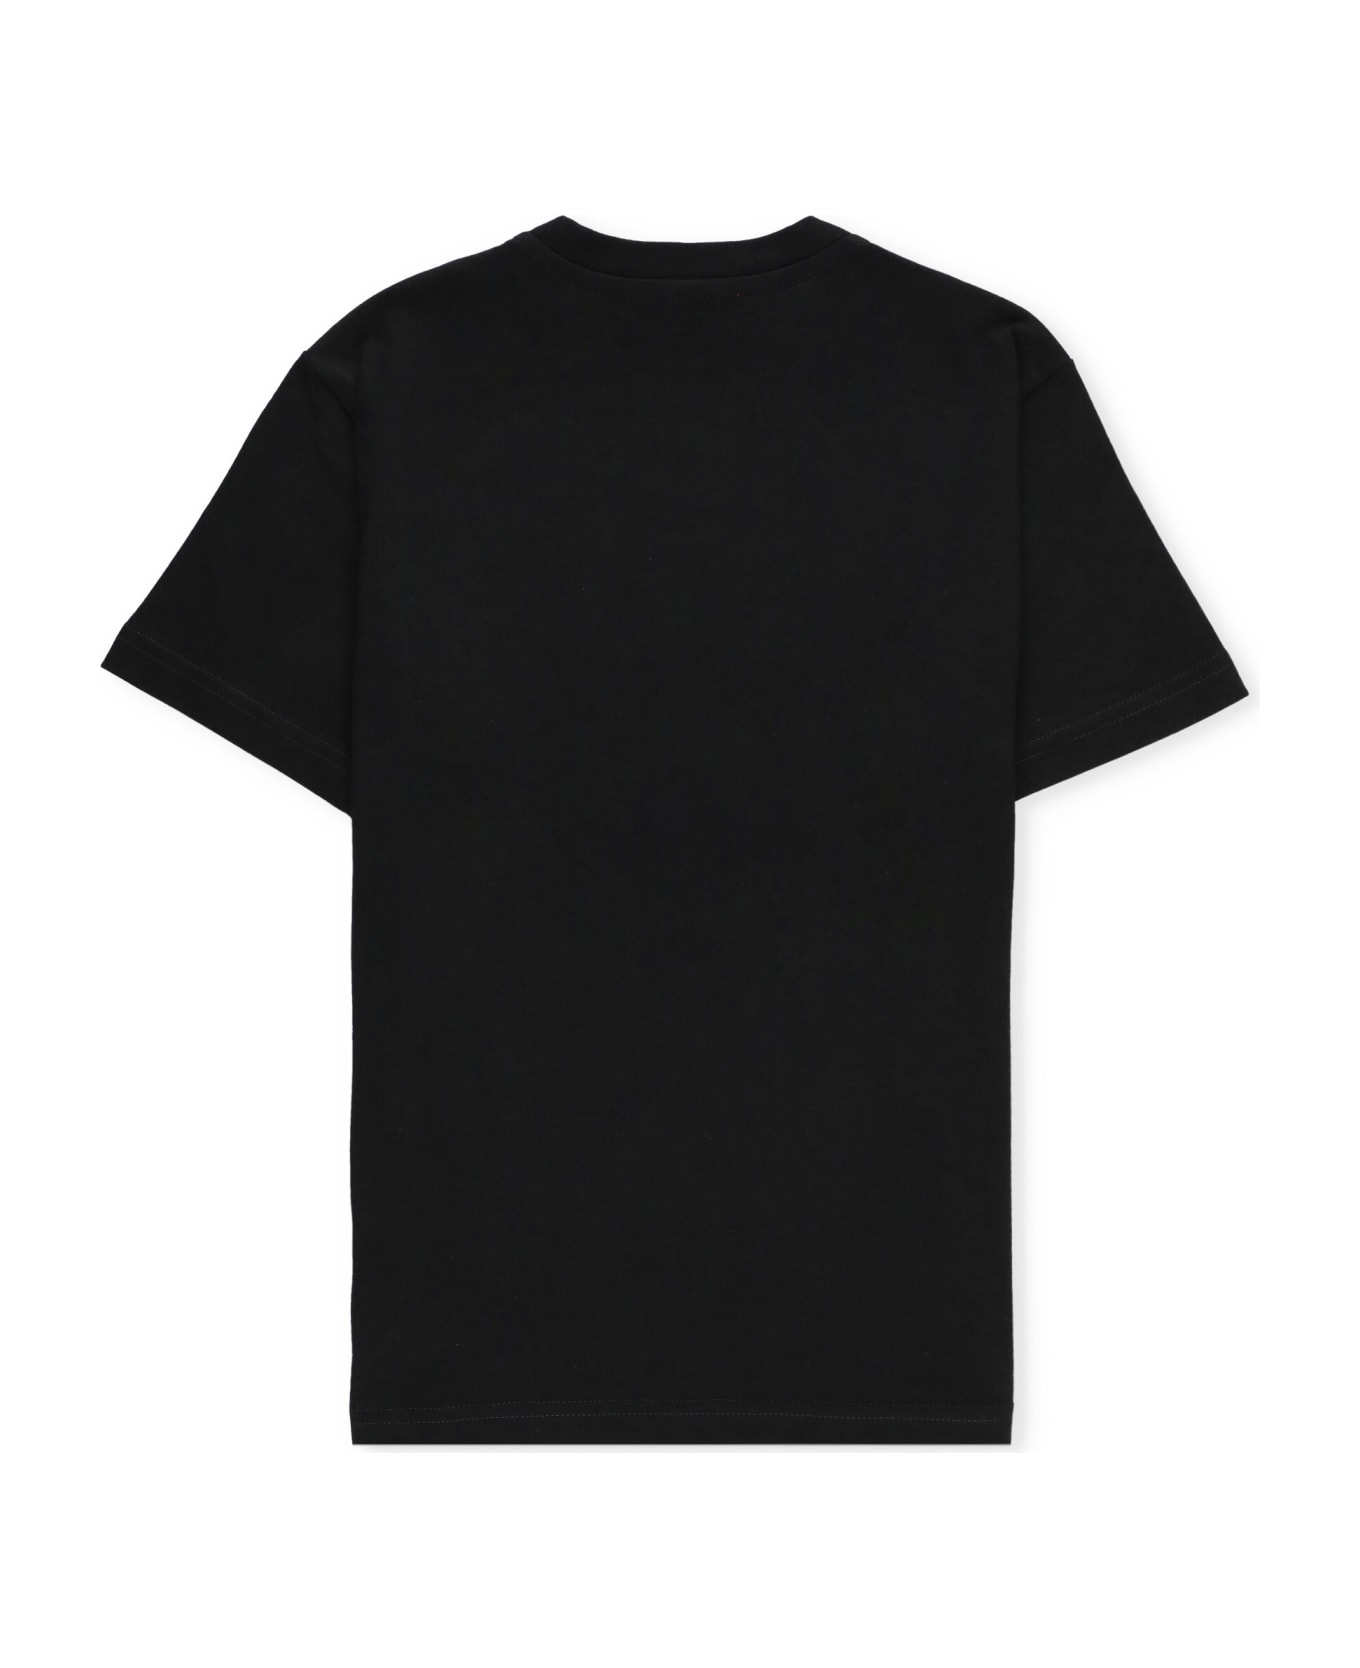 Diesel Tkand T-shirt - Black